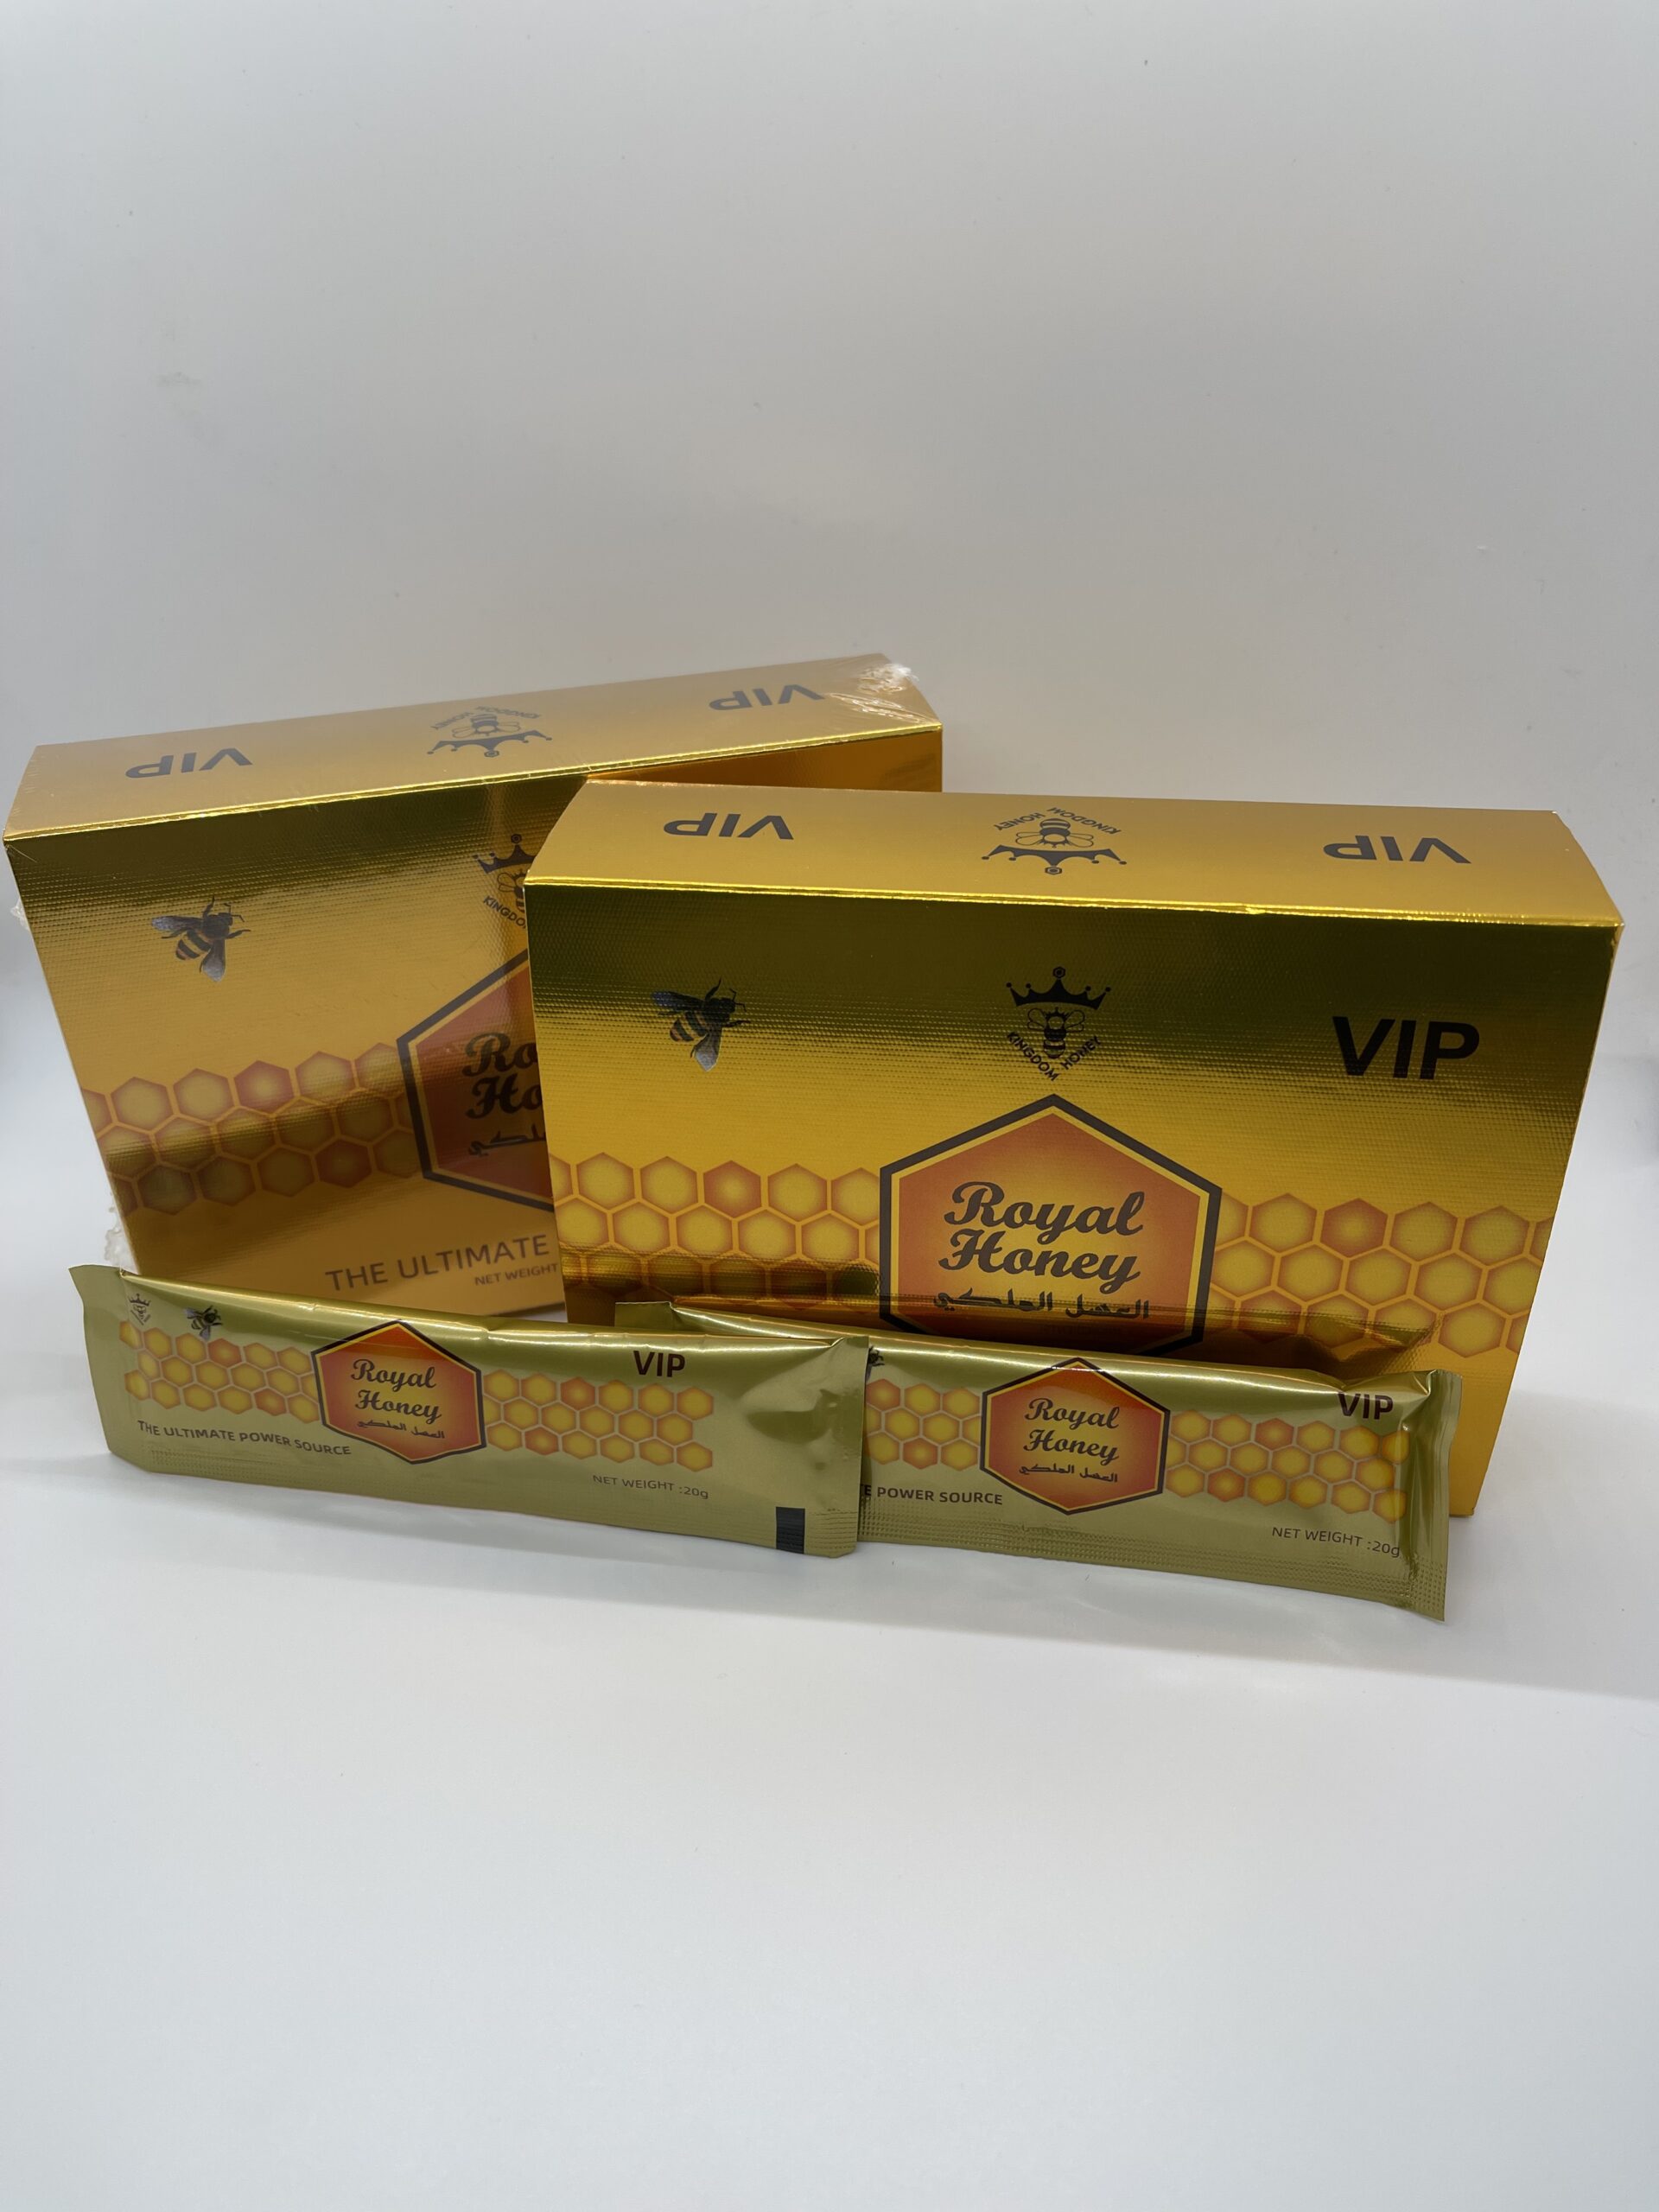 Royal Honey for Men (VIP) 20 Gram Sachets x 24 in total Royalty Honey USA